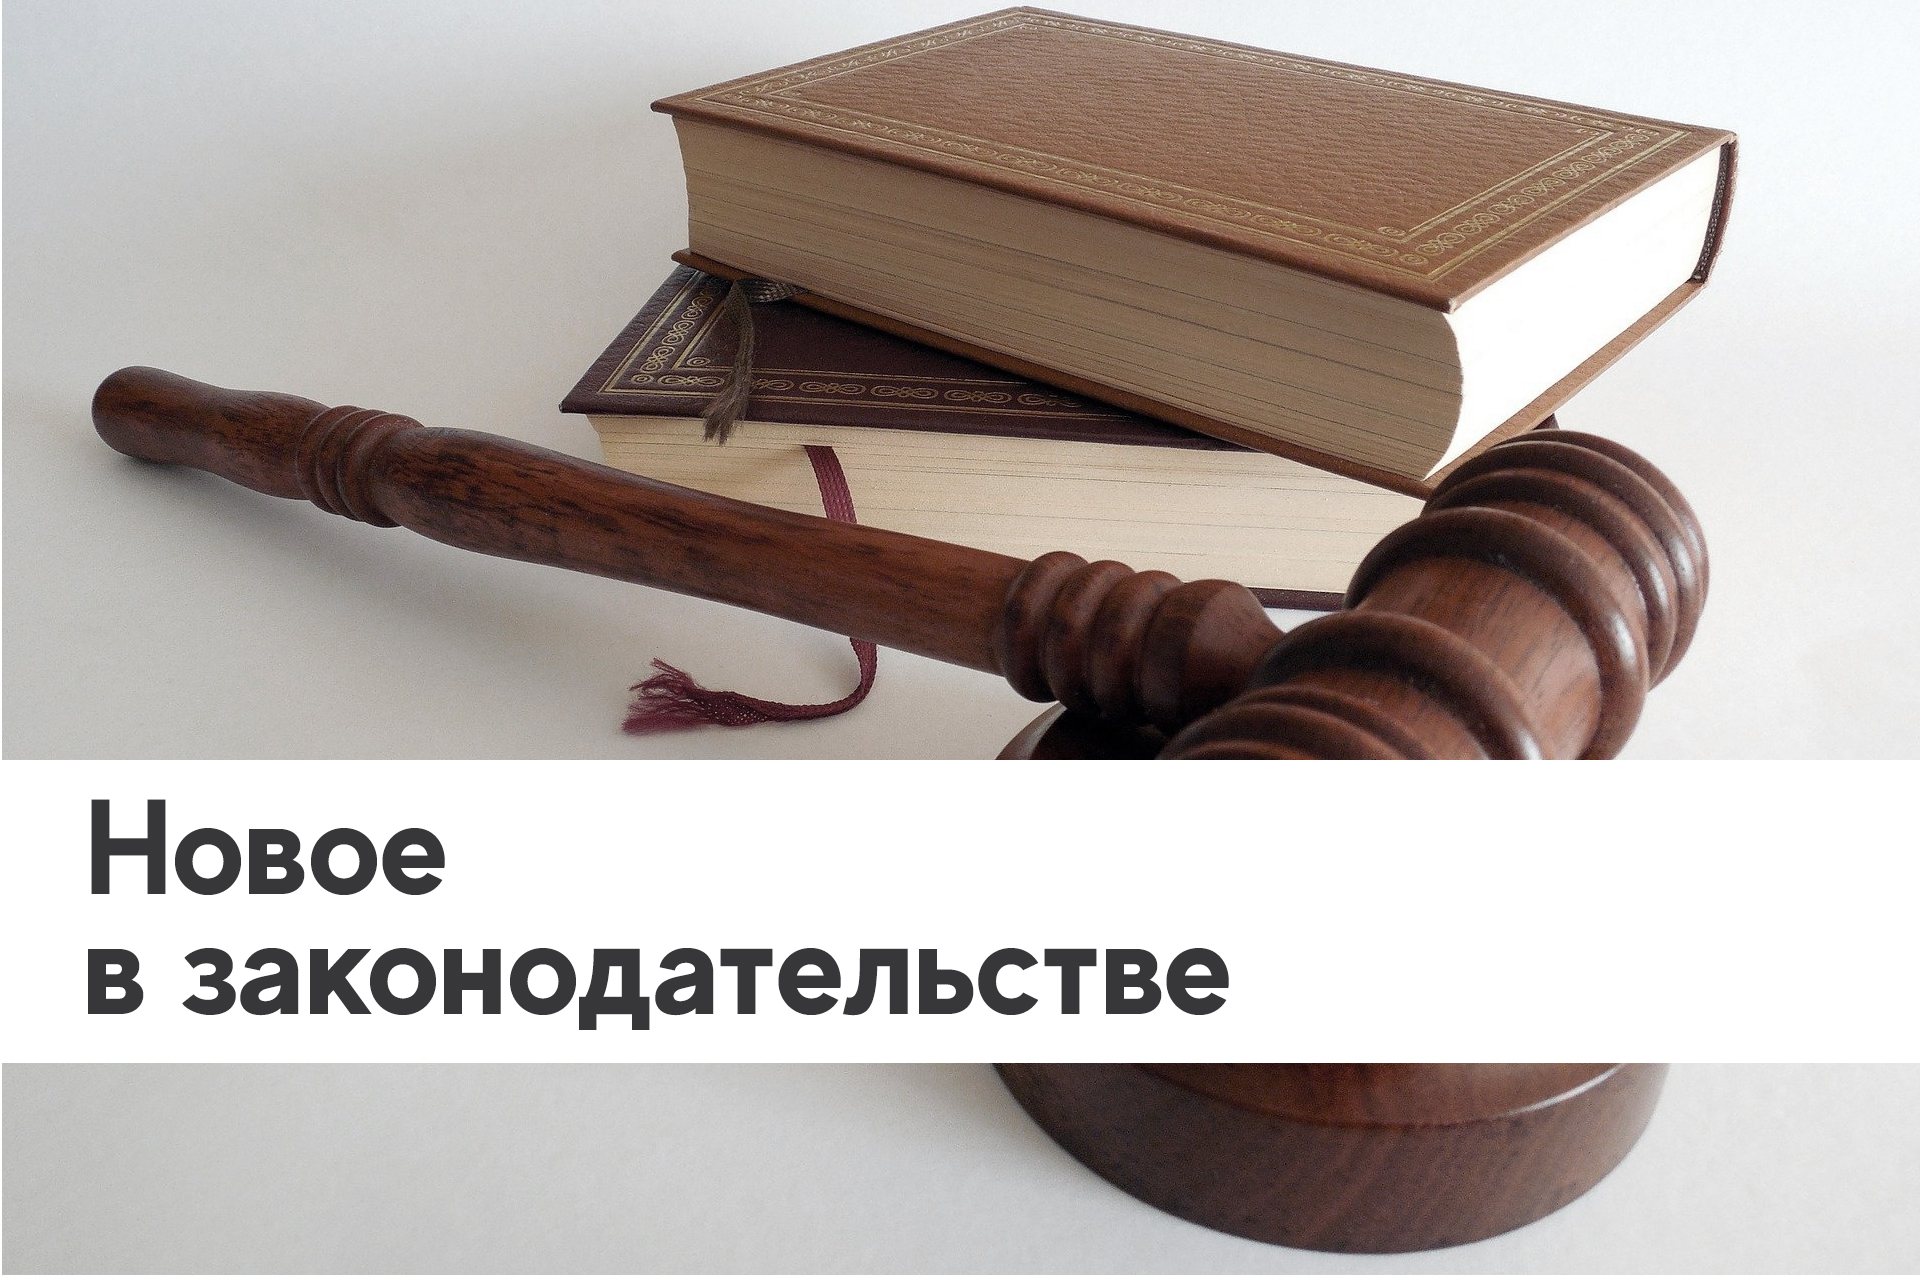 Изменения в Федеральном законе "Об образовании в Российской Федерации"